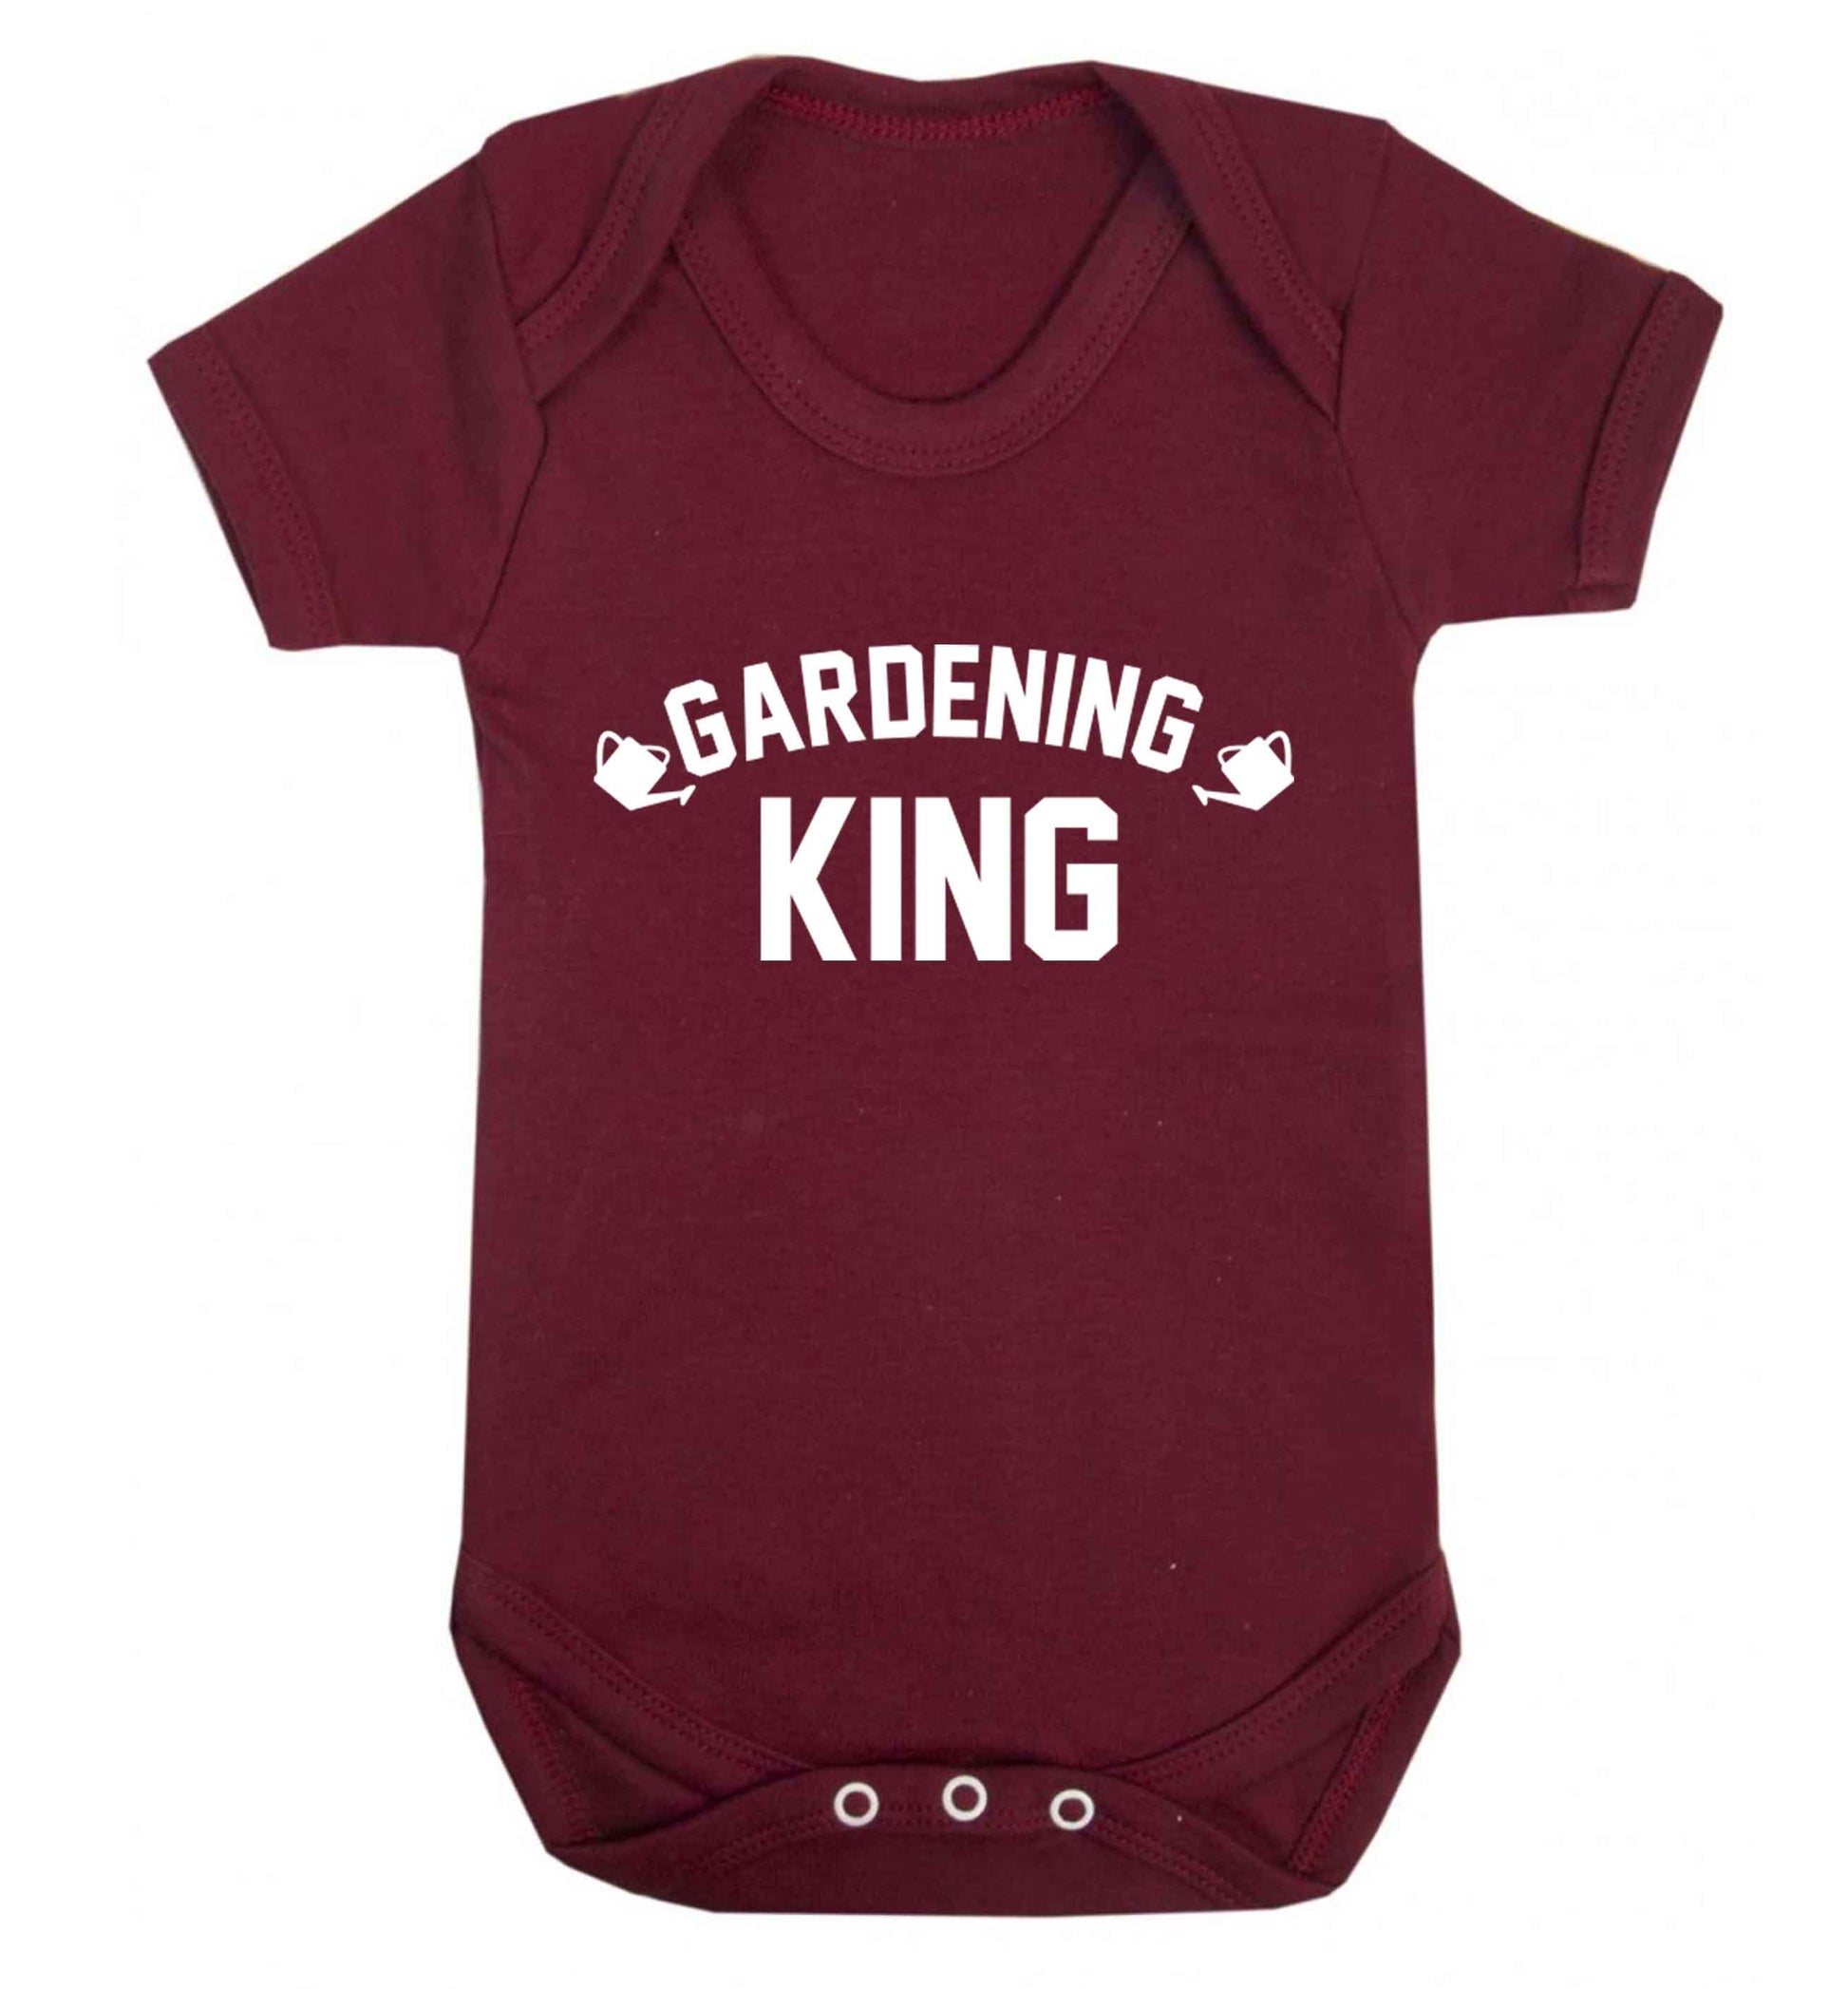 Gardening king Baby Vest maroon 18-24 months